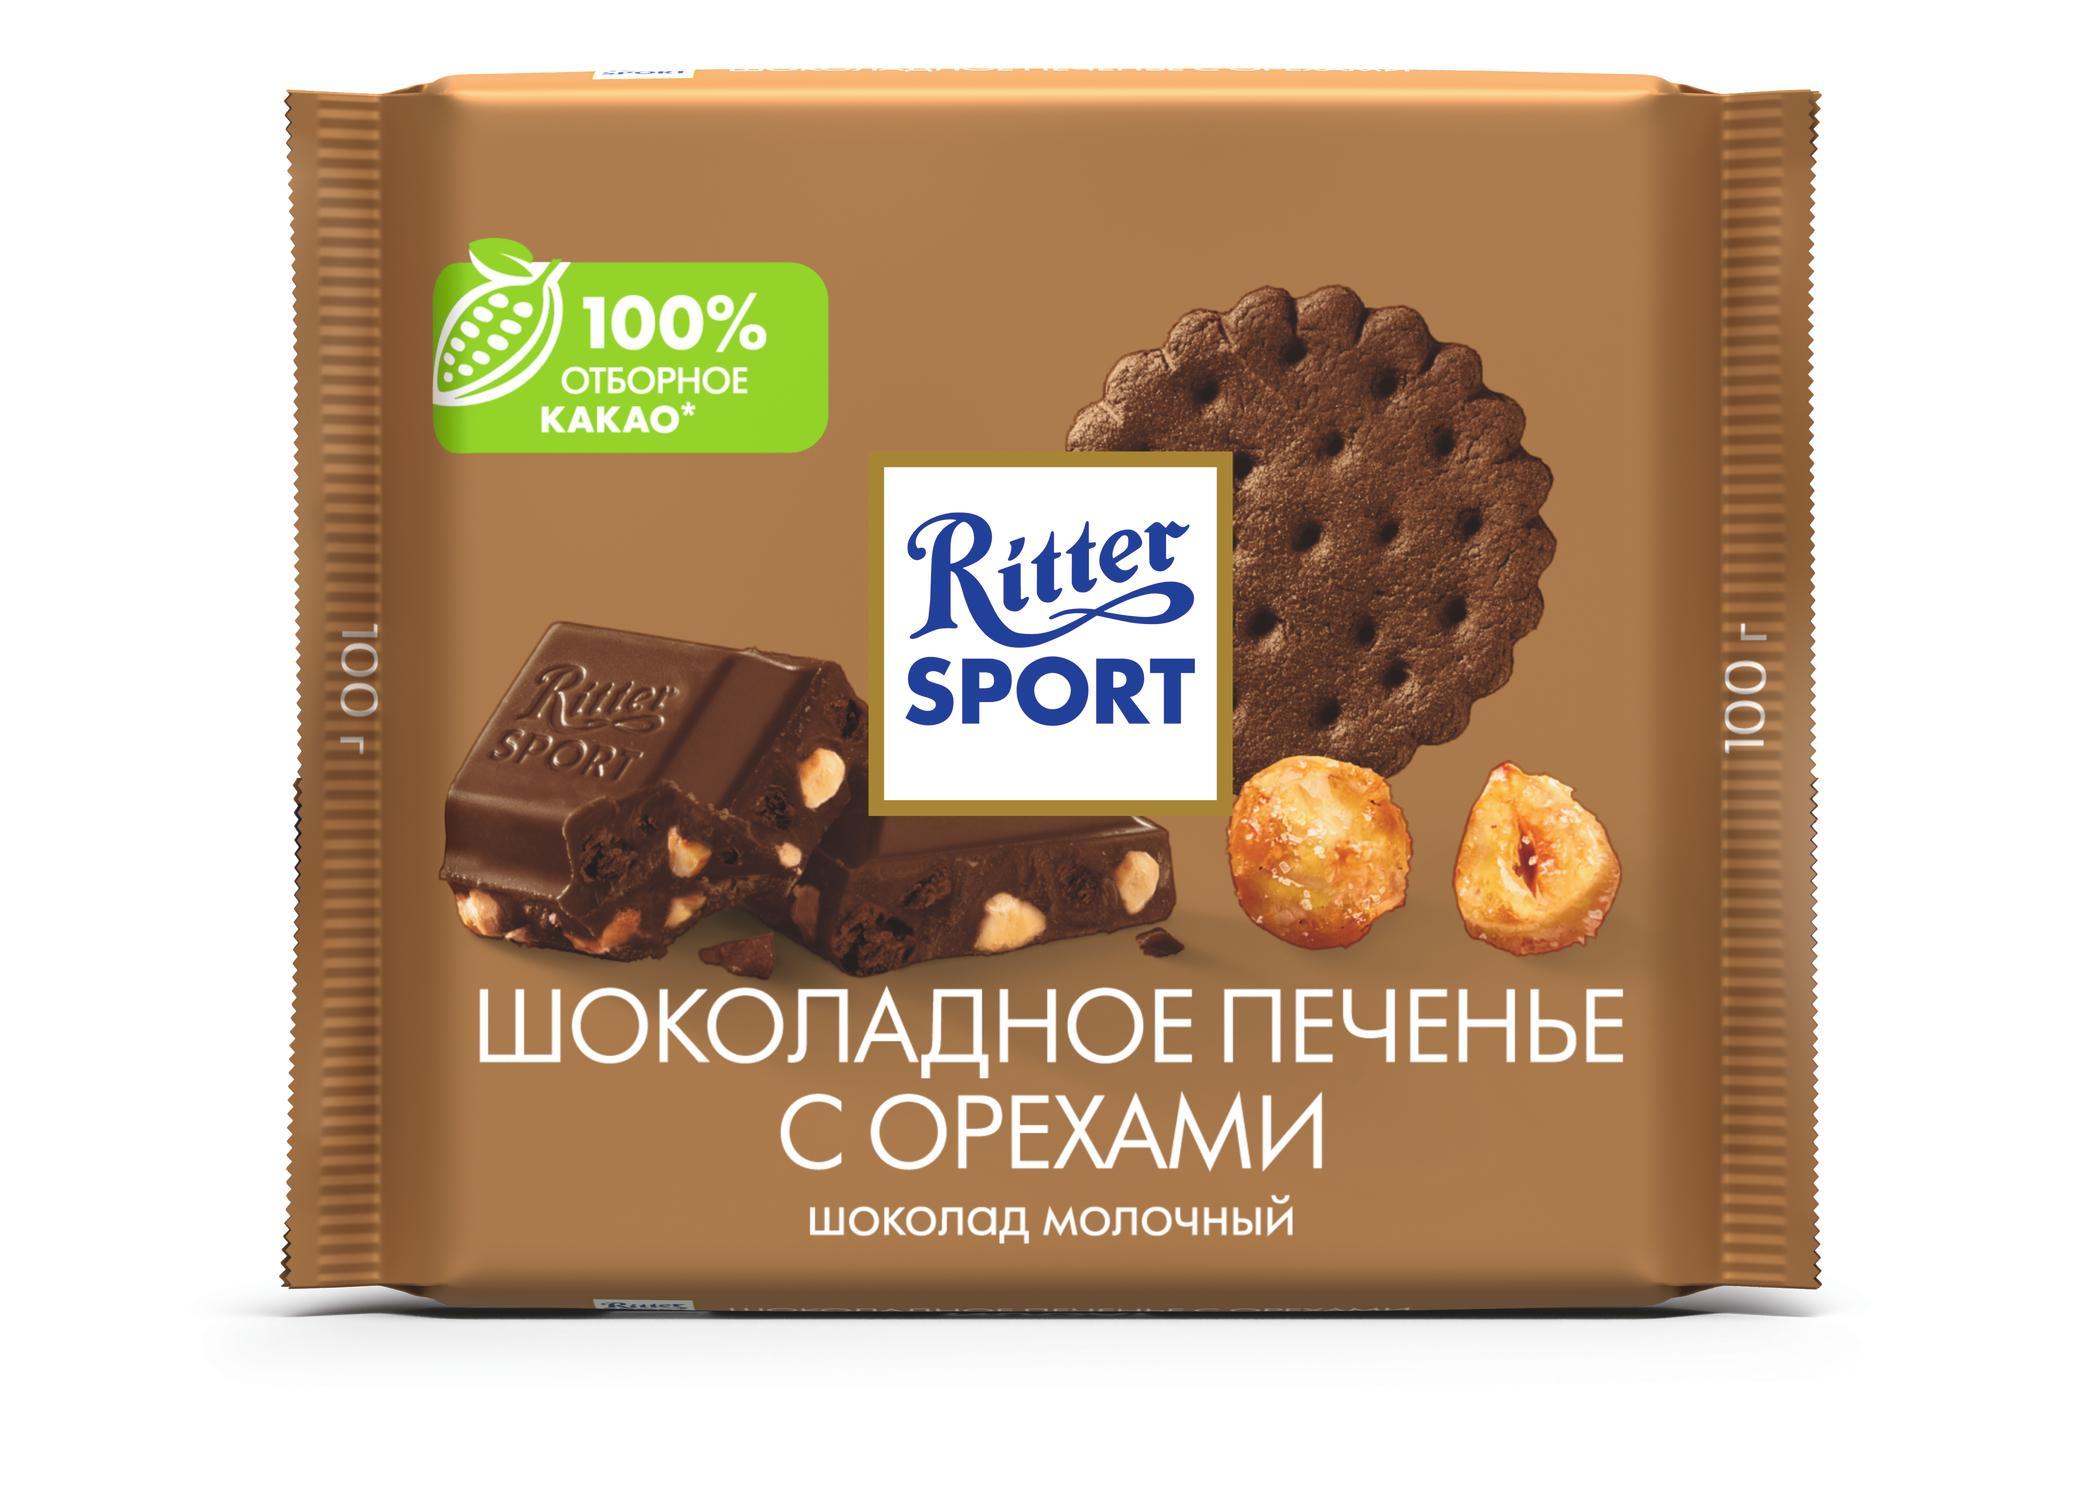 Шоколад Ritter Sport шоколад и шоколадное печенье с орехами, 100 гр., флоу-пак